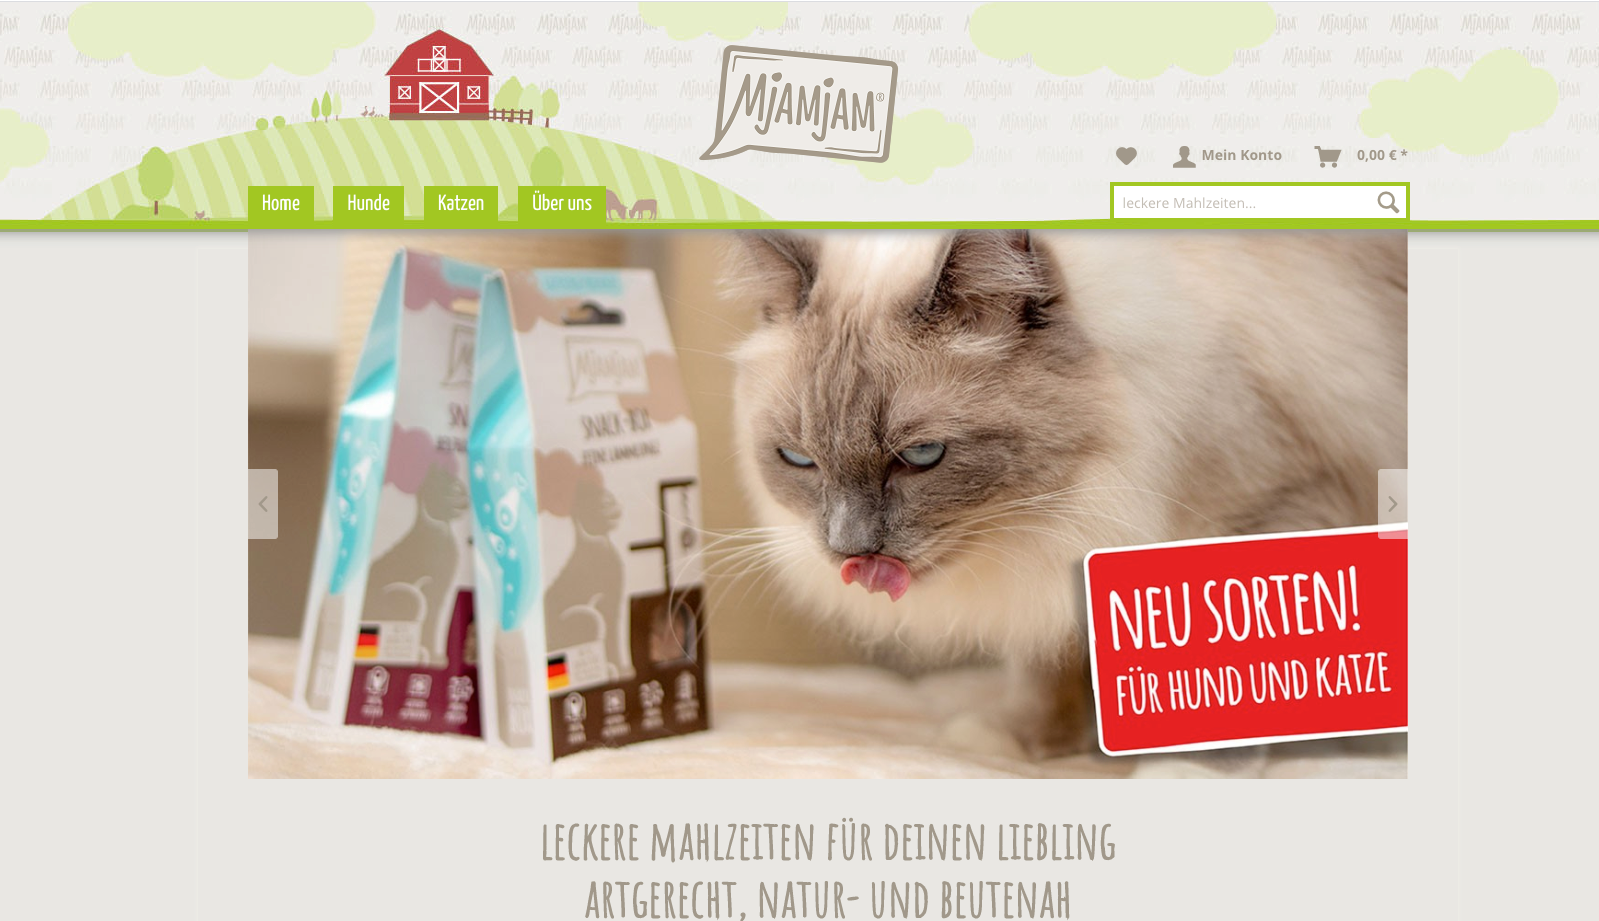 MjAMjAM Petfood GmbH